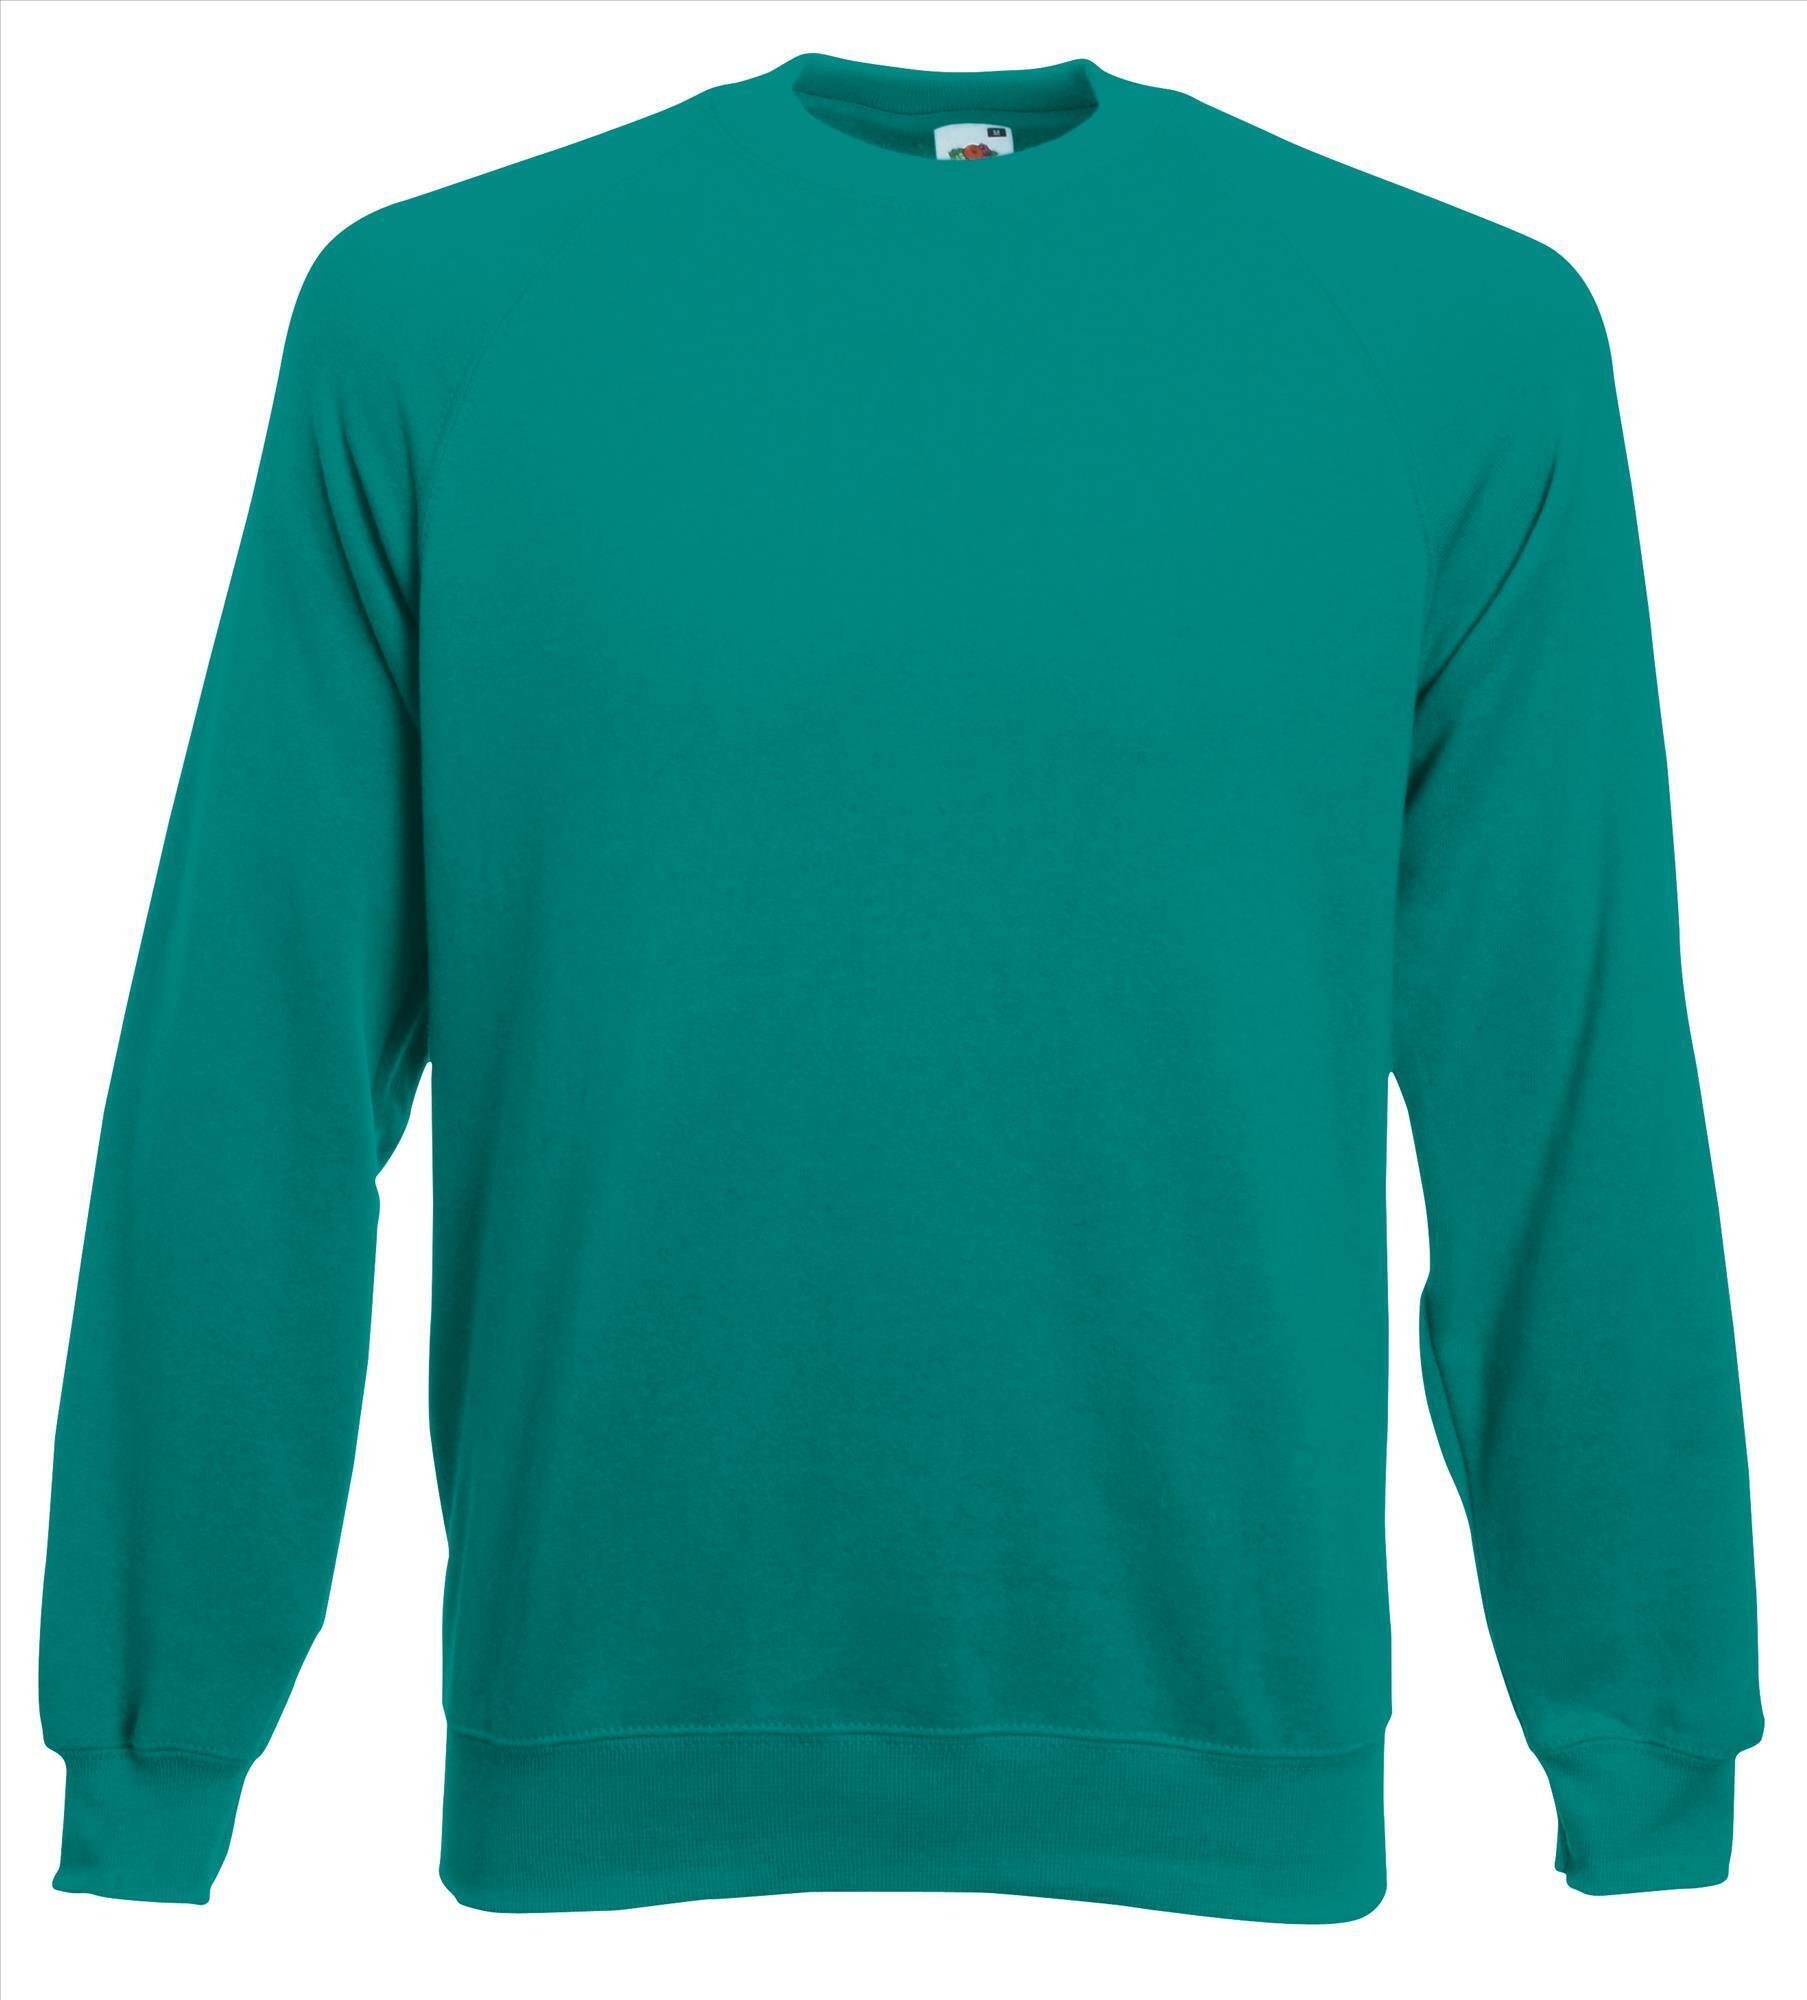 Sweater emerald voor mannen bedrukbaar te personaliseren sweatshirts